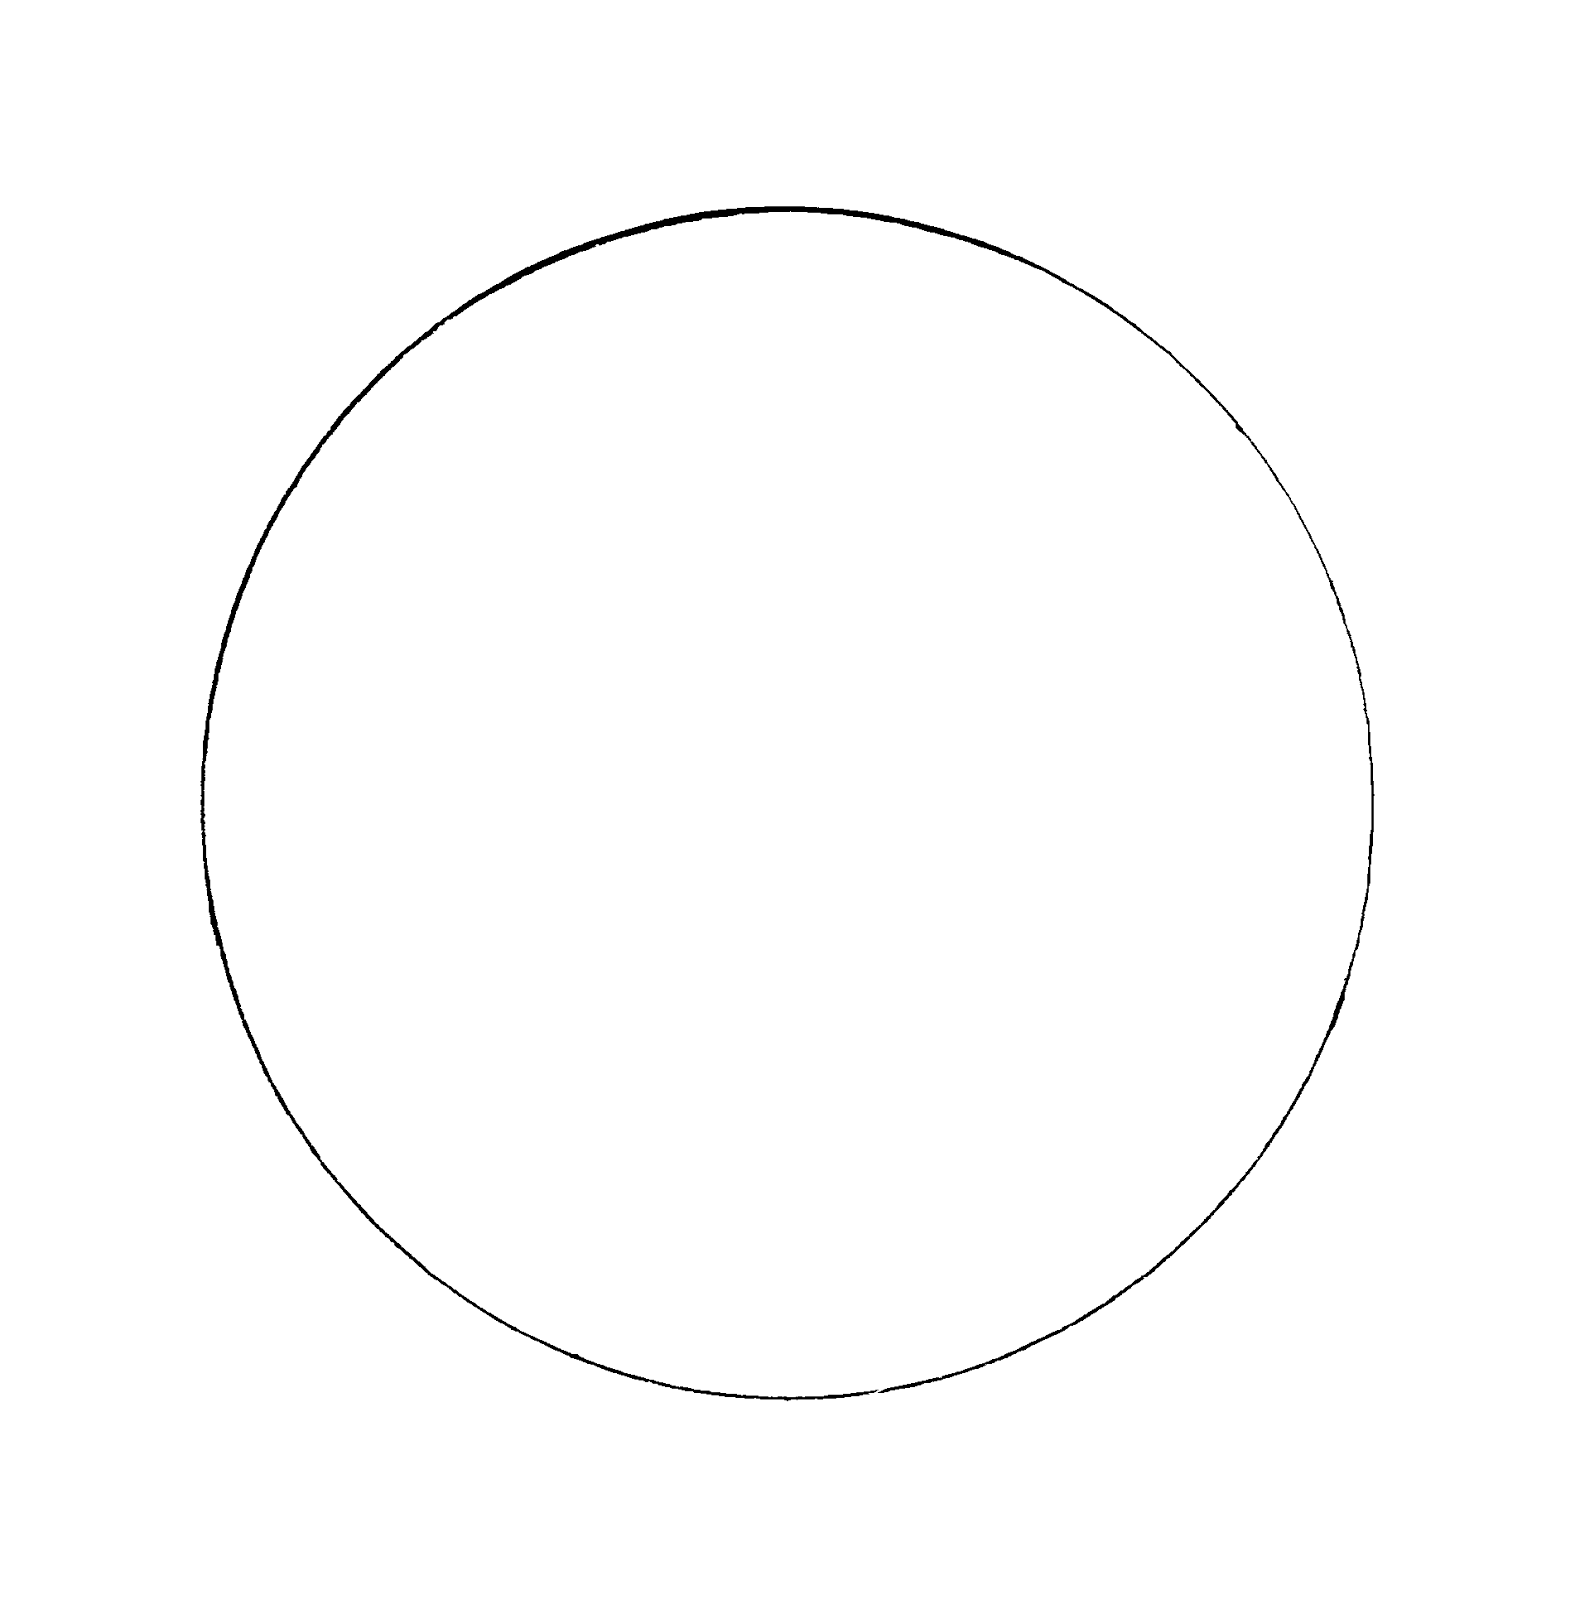 Нарисовать рисунок окружности. Трафарет круги. Шаблон "круги". Круг для раскрашивания. Белая окружность на прозрачном фоне.